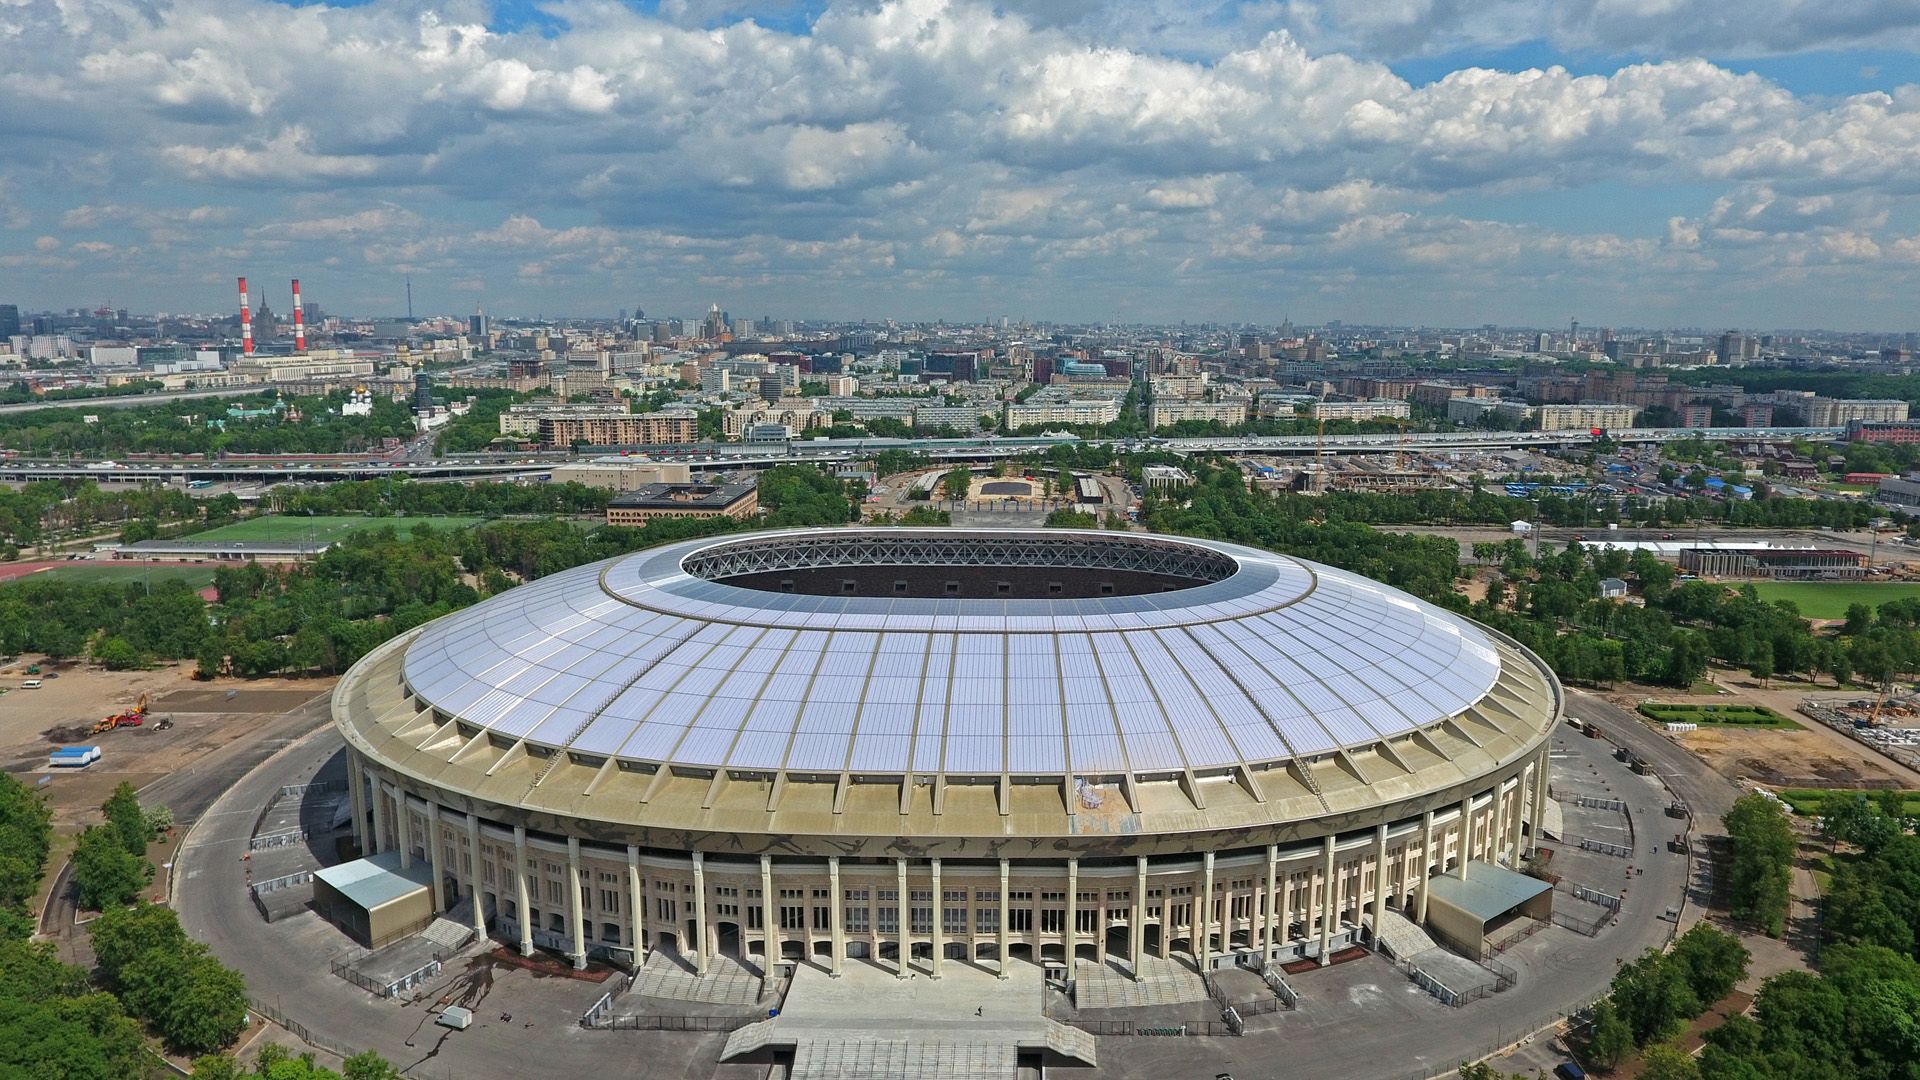  Rossiyadagi Jahon chempionati o'yinlariga mezbonlik qiladigan 12 ta stadion bilan tanishing